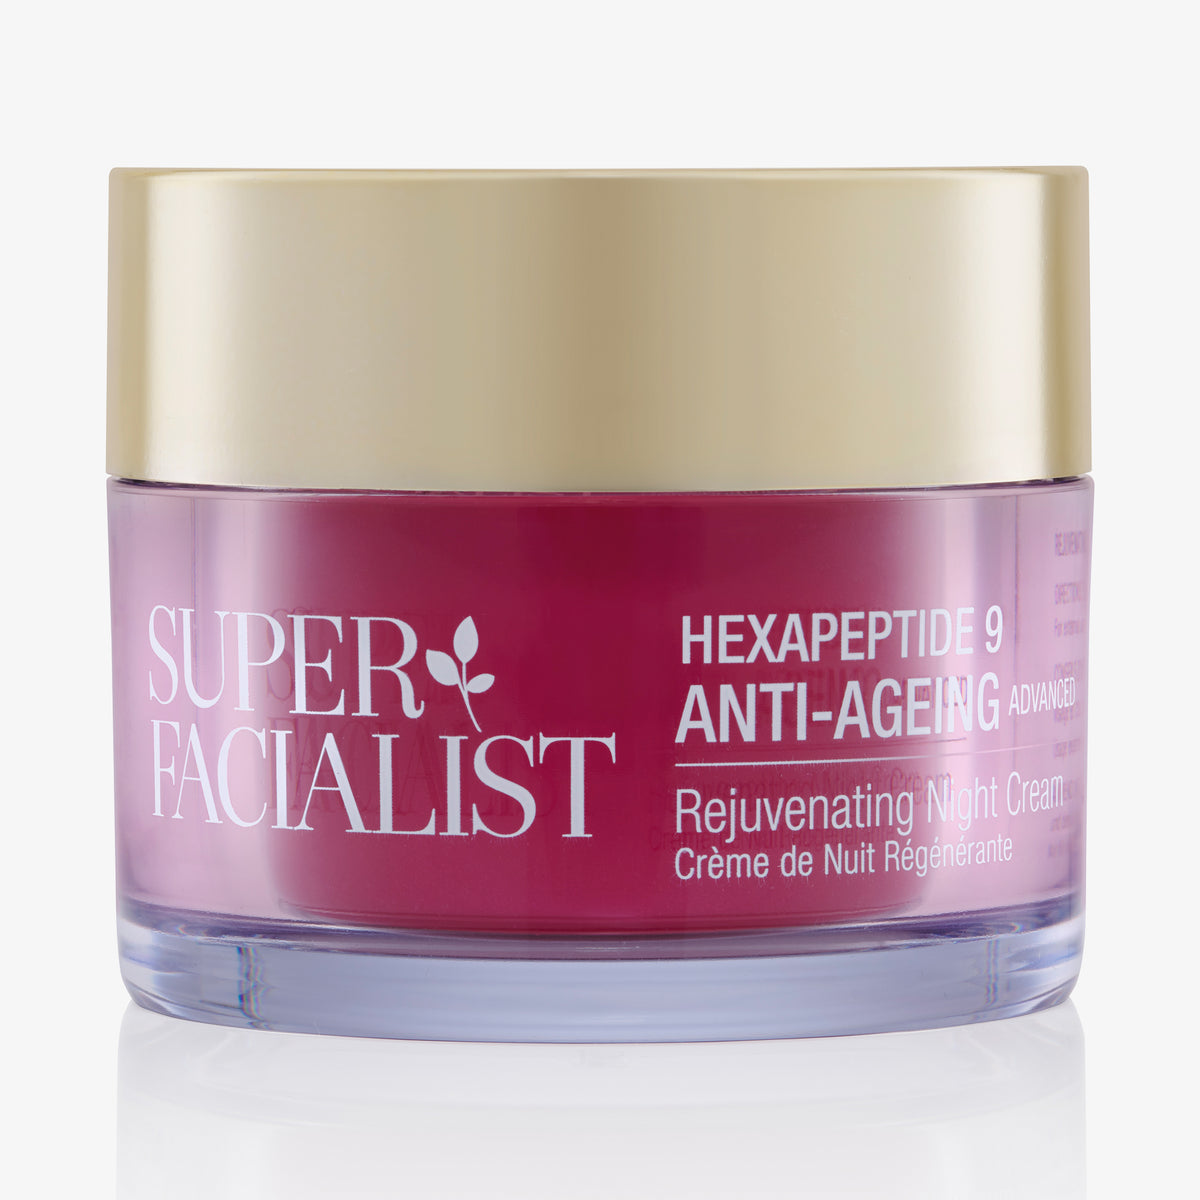 Super Facialist | Hex-9 Anti-Ageing Adv Rejuvenating Night Cream